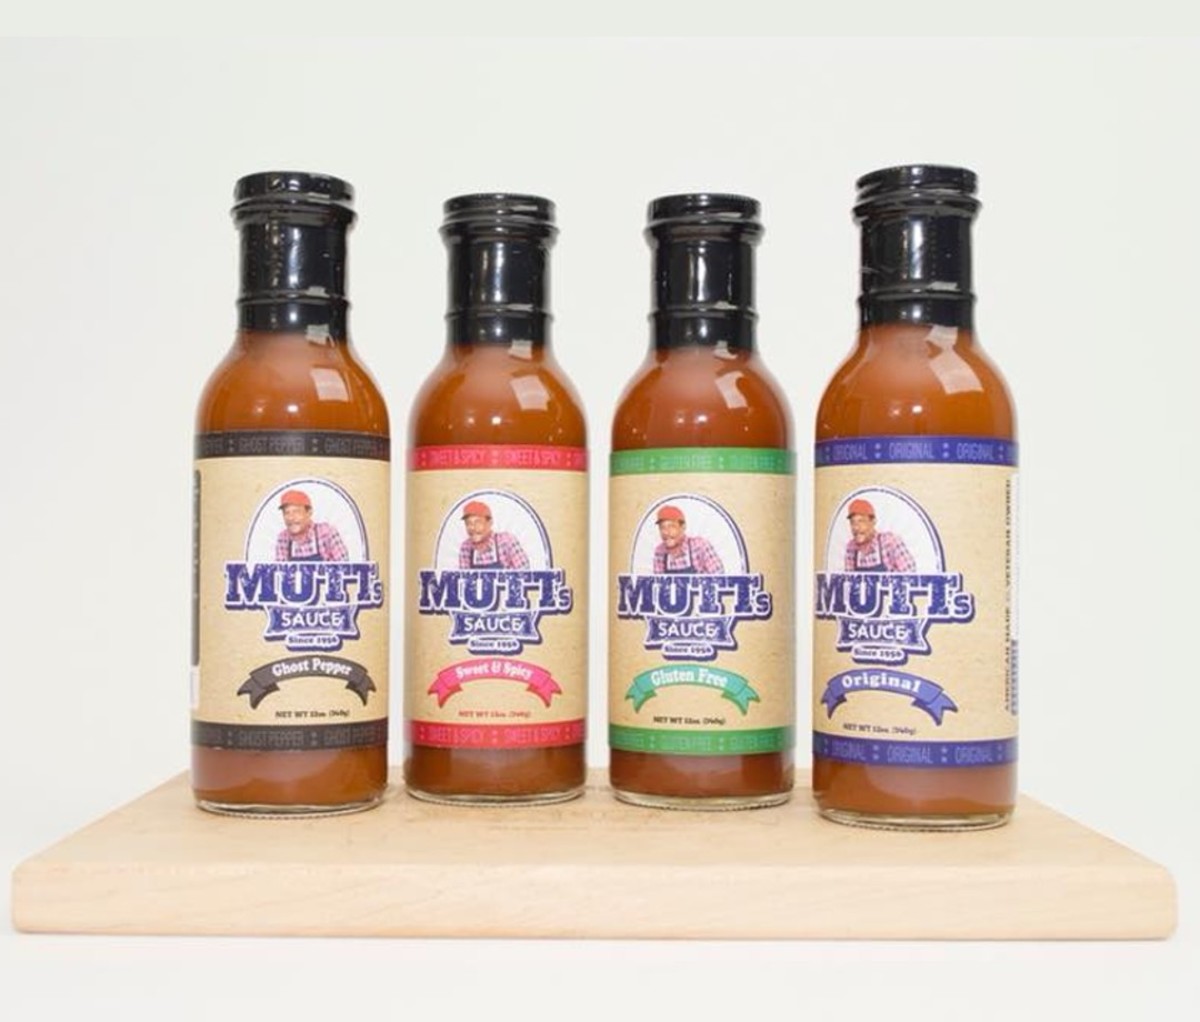 Mutt’s Sauce Original Mutt’s Sauce